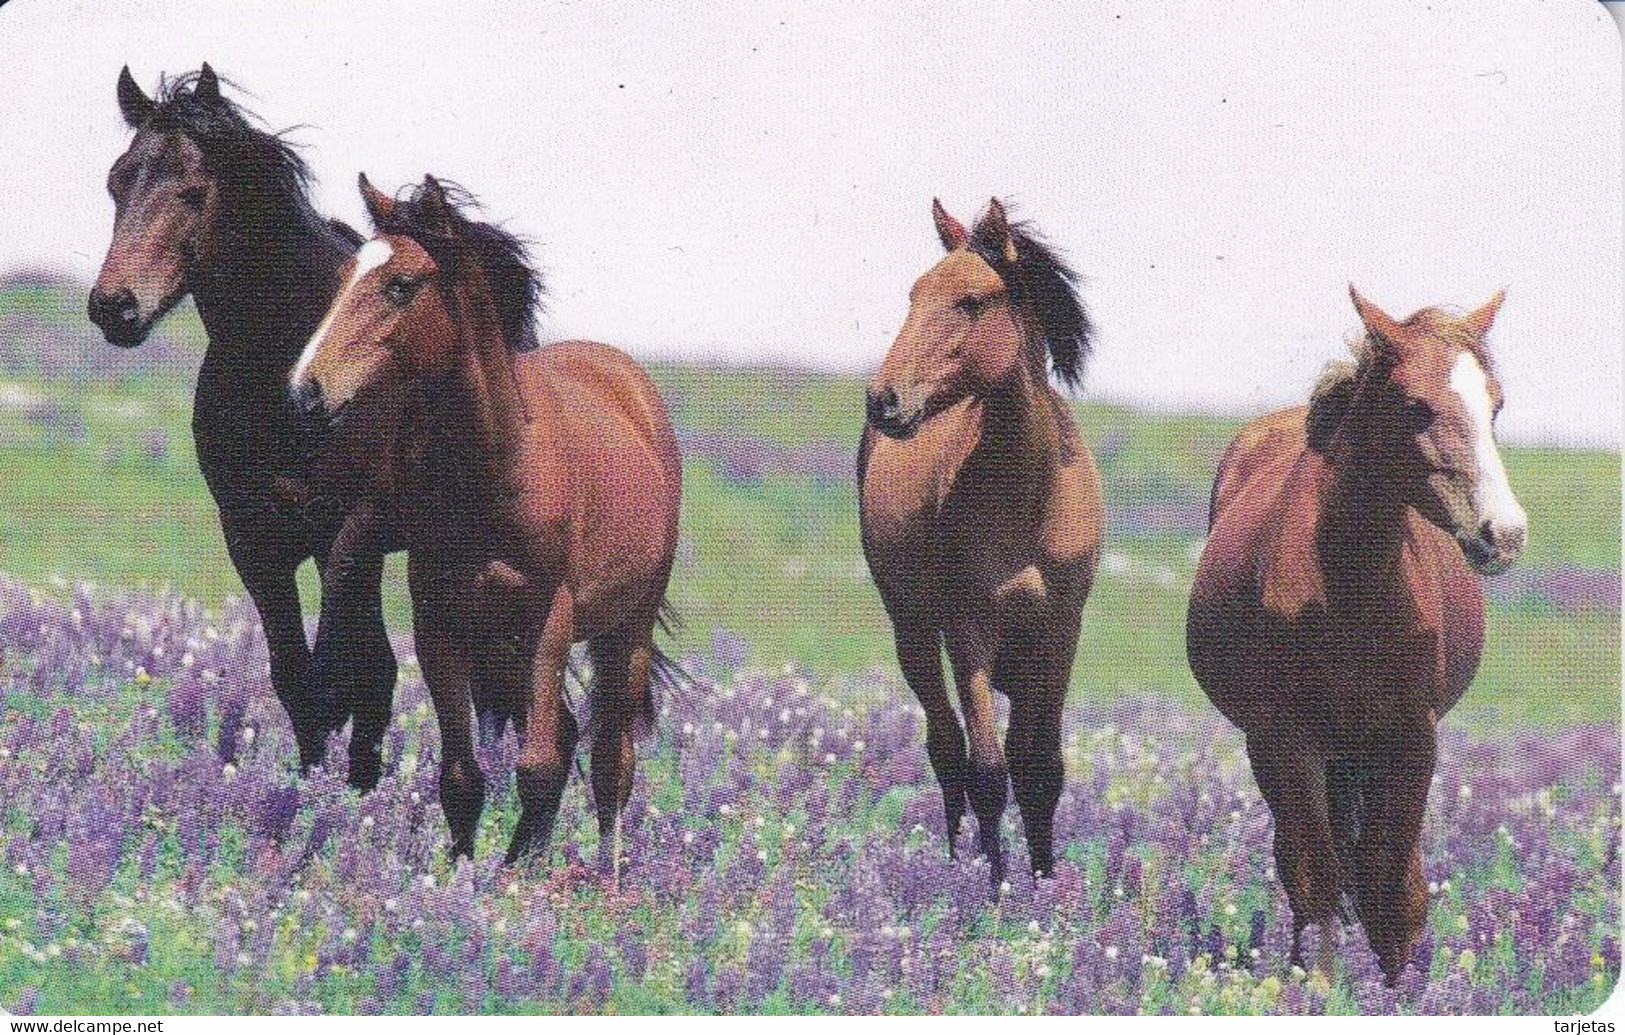 TARJETA DE ALEMANIA DE UNOS CABALLOS DE TIRADA 10000 (CABALLO-HORSE) - Horses